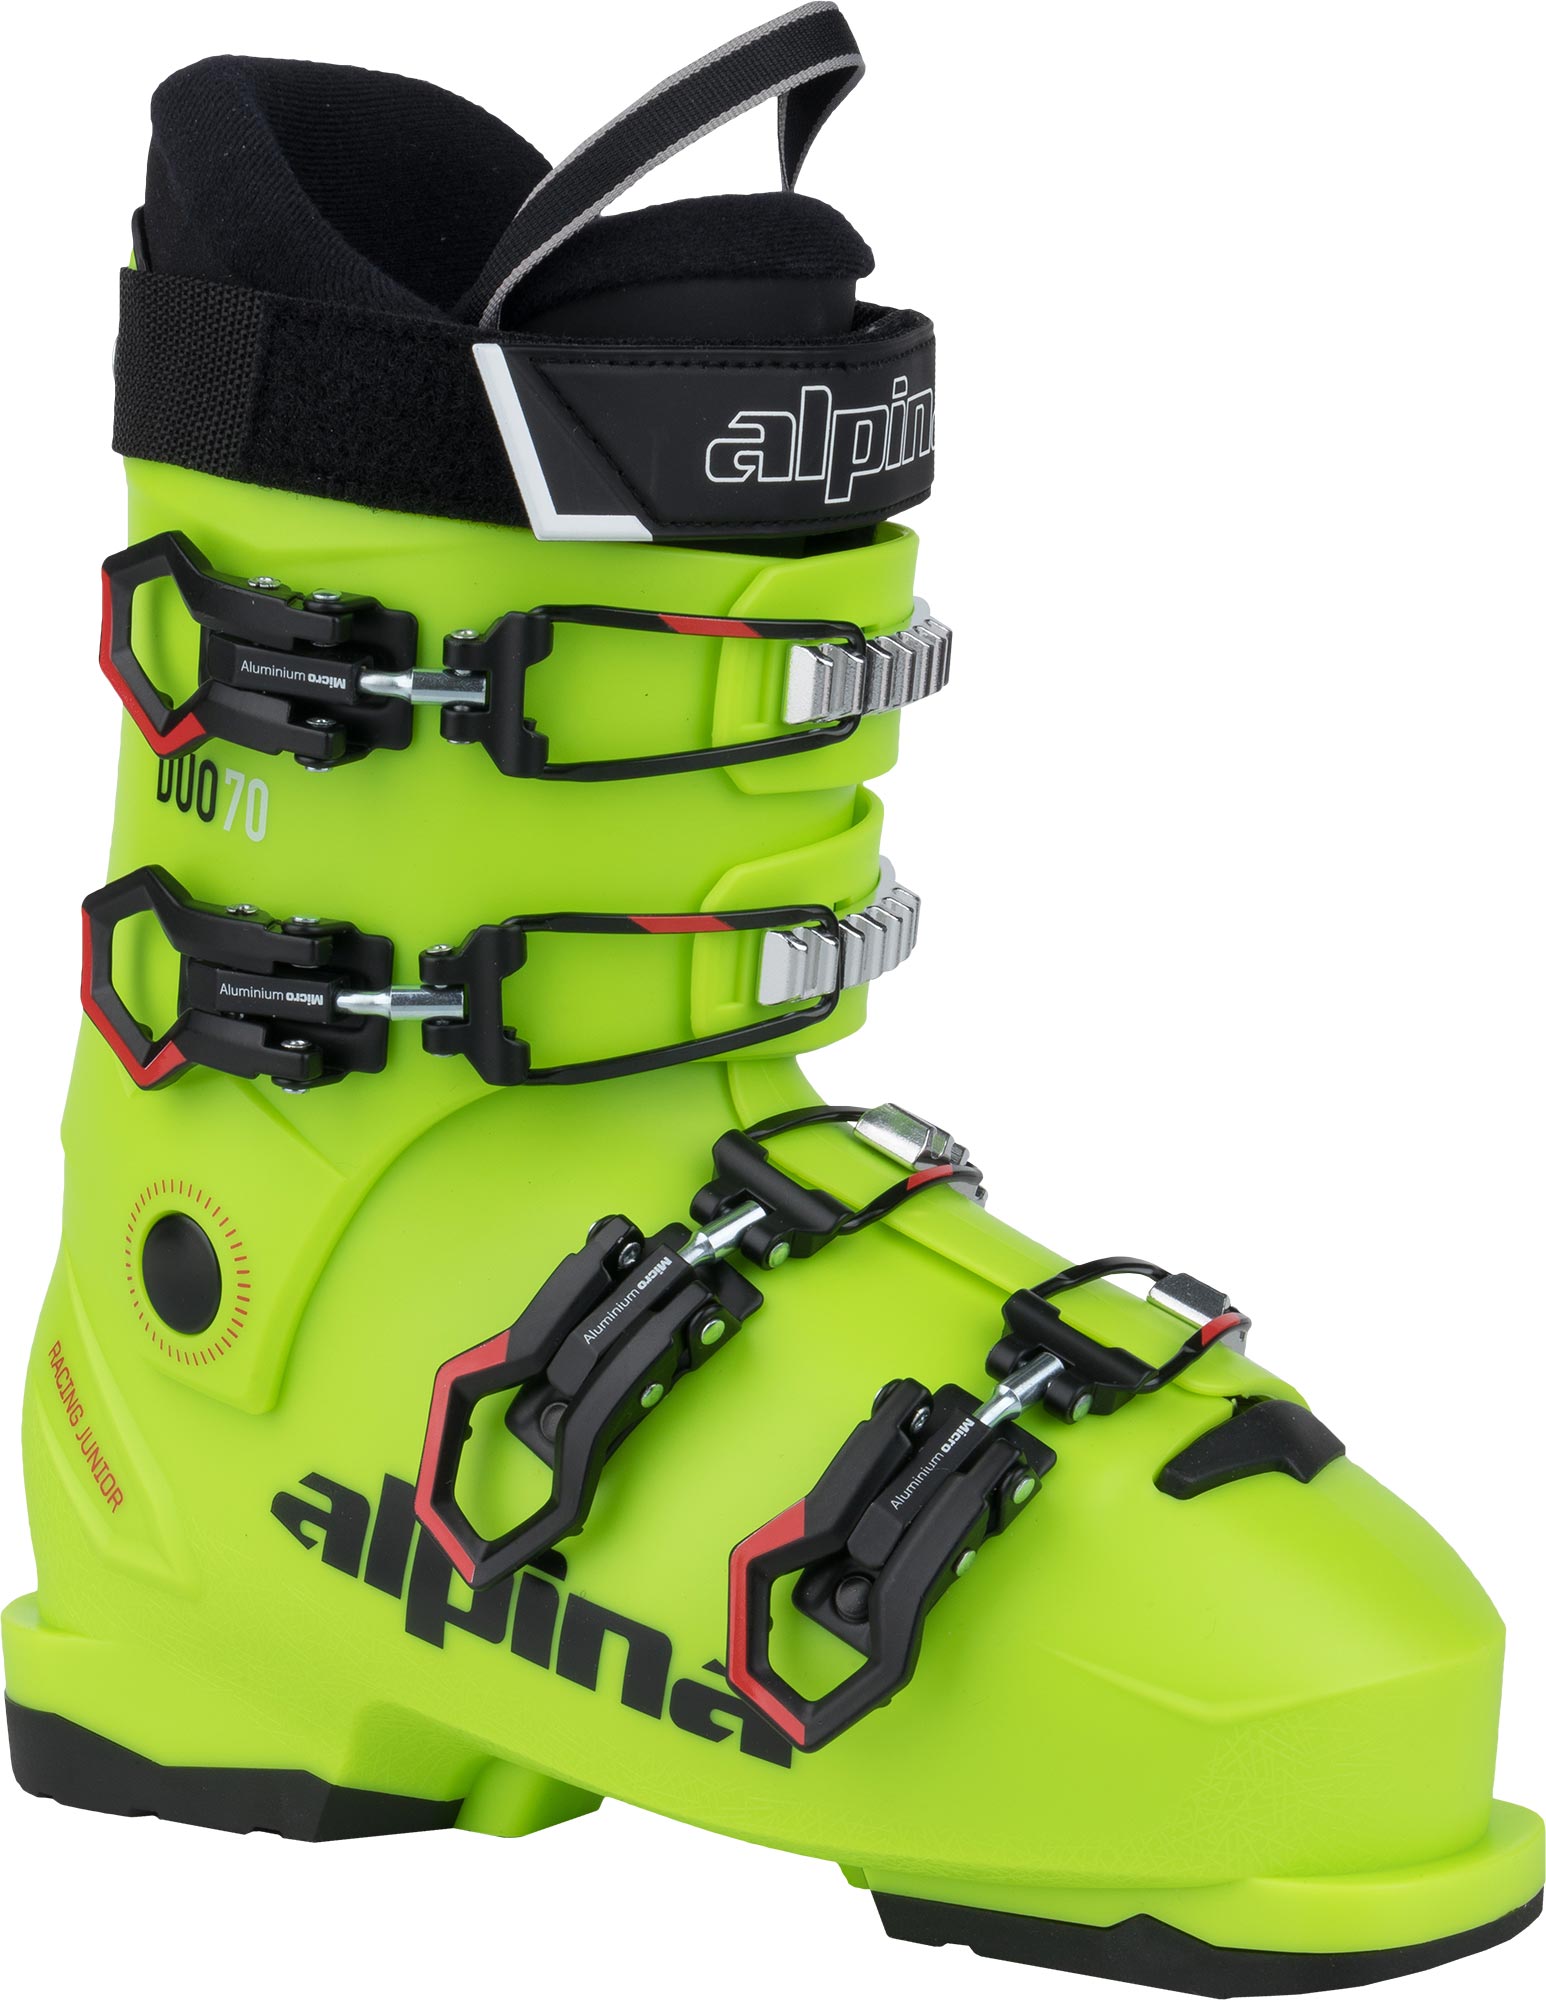 Children’s downhill ski boots